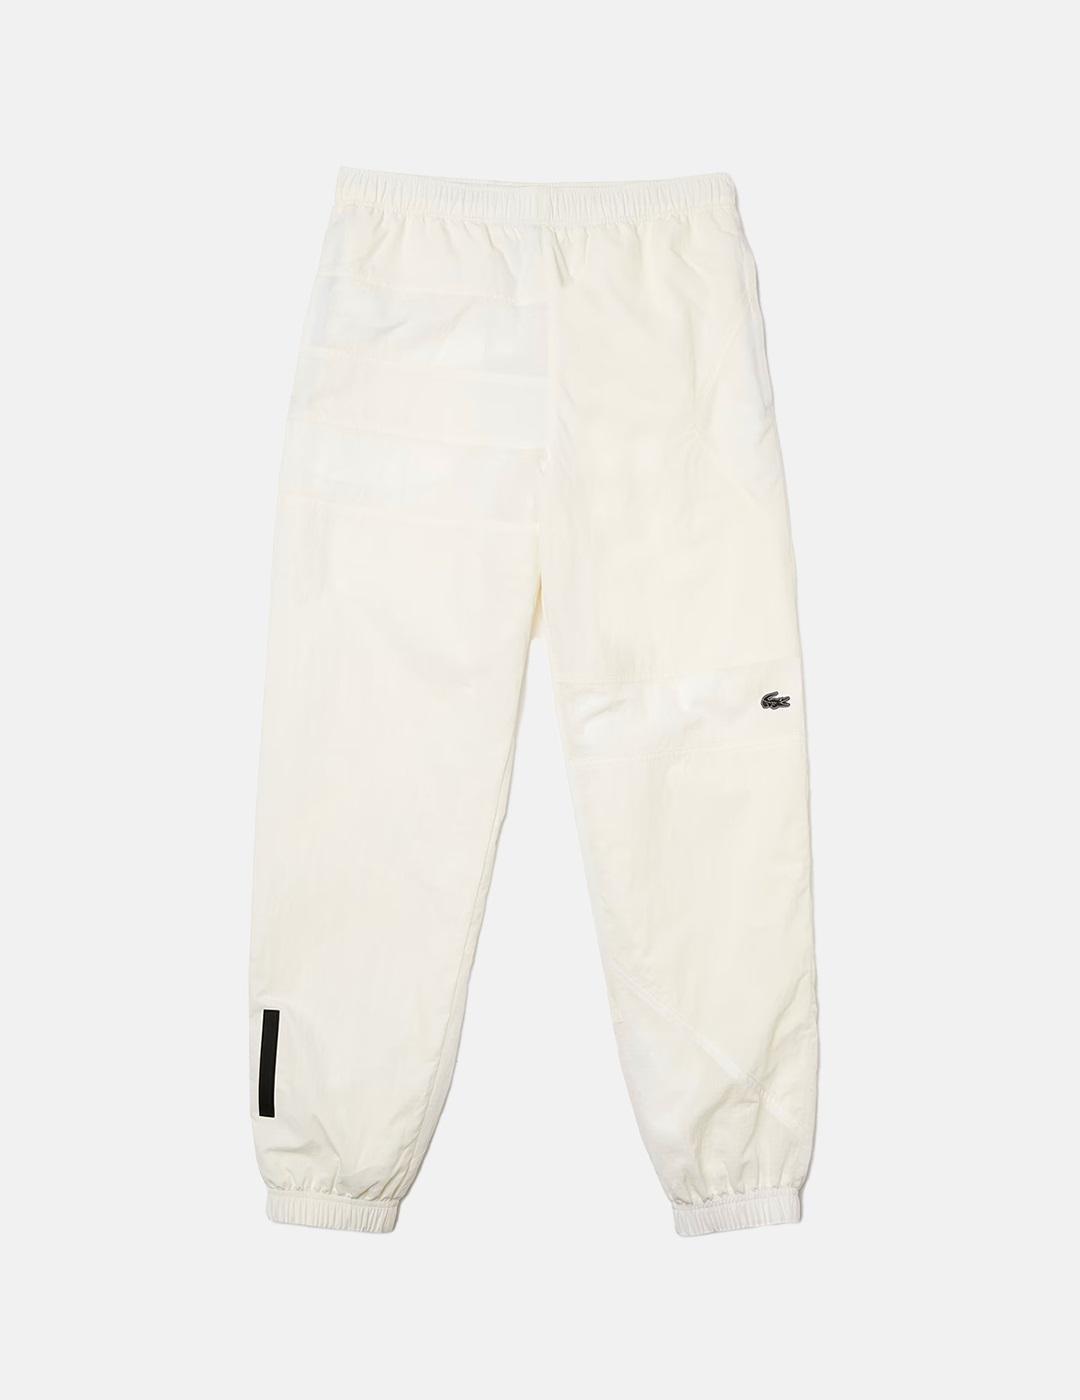 Pantalones Lacoste Sport Blanco Liso de Poliamida De Hombre